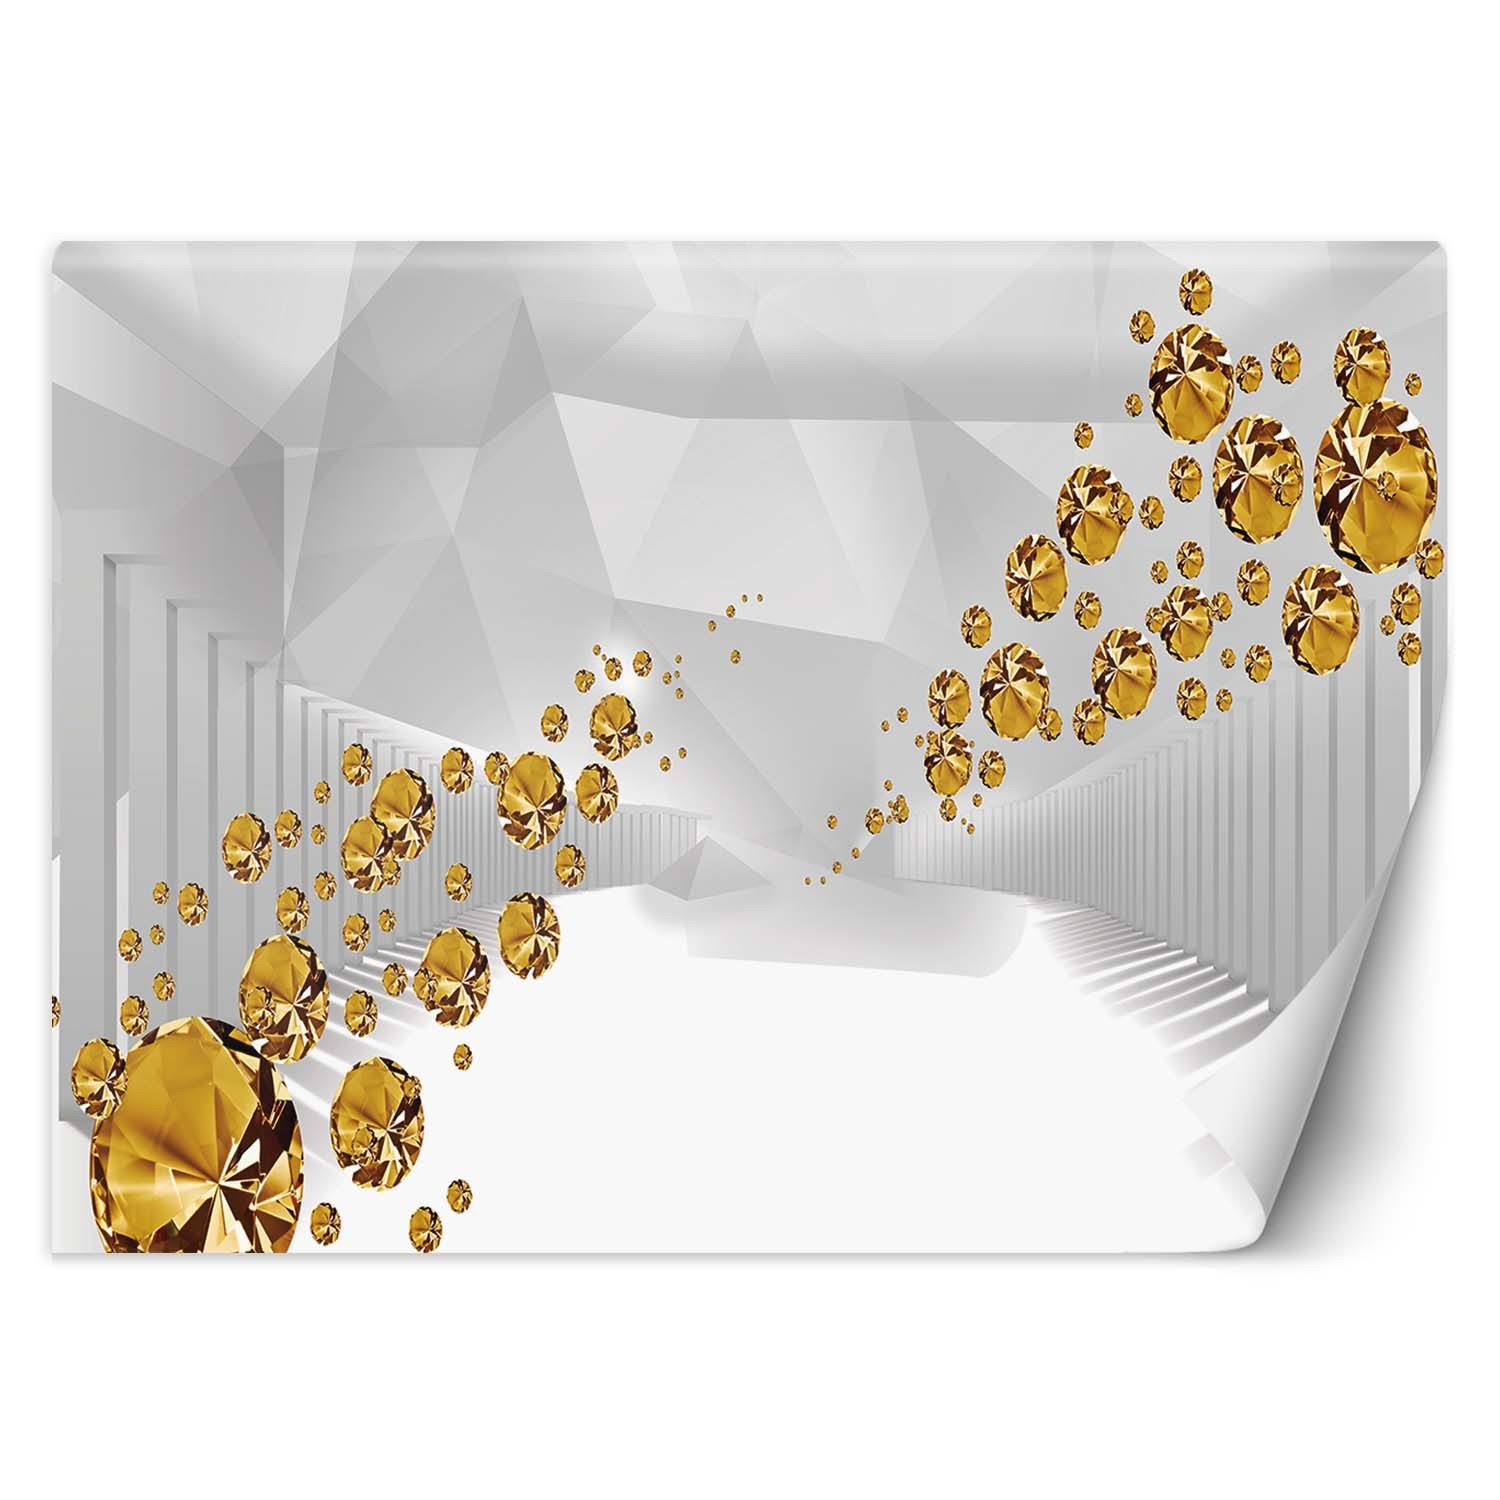 Trend24 – Behang – Gouden Stenen In Een Abstracte Tunnel – Vliesbehang – Fotobehang 3D – Behang Woonkamer – 450x315x2 cm – Incl. behanglijm